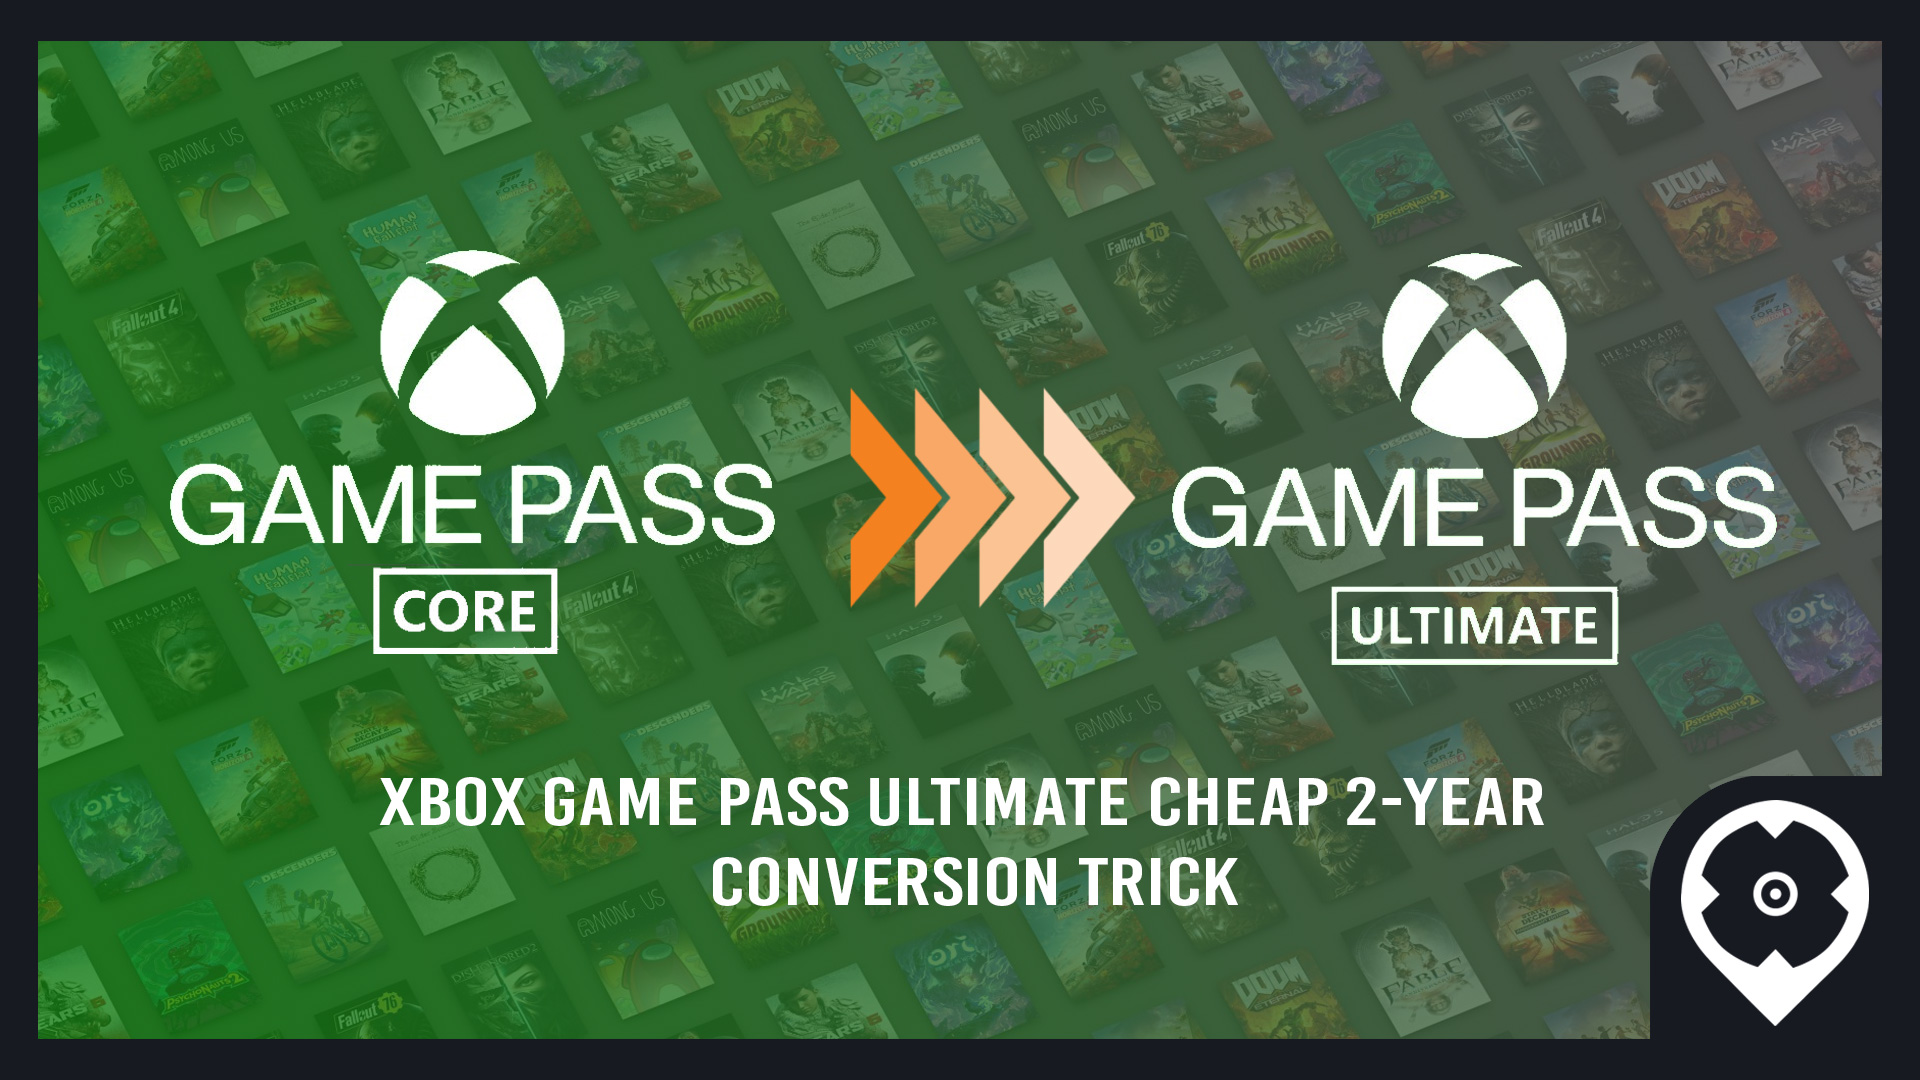 69% de desconto! Obtenha 3 anos de Xbox Game Pass Ultimate pagando